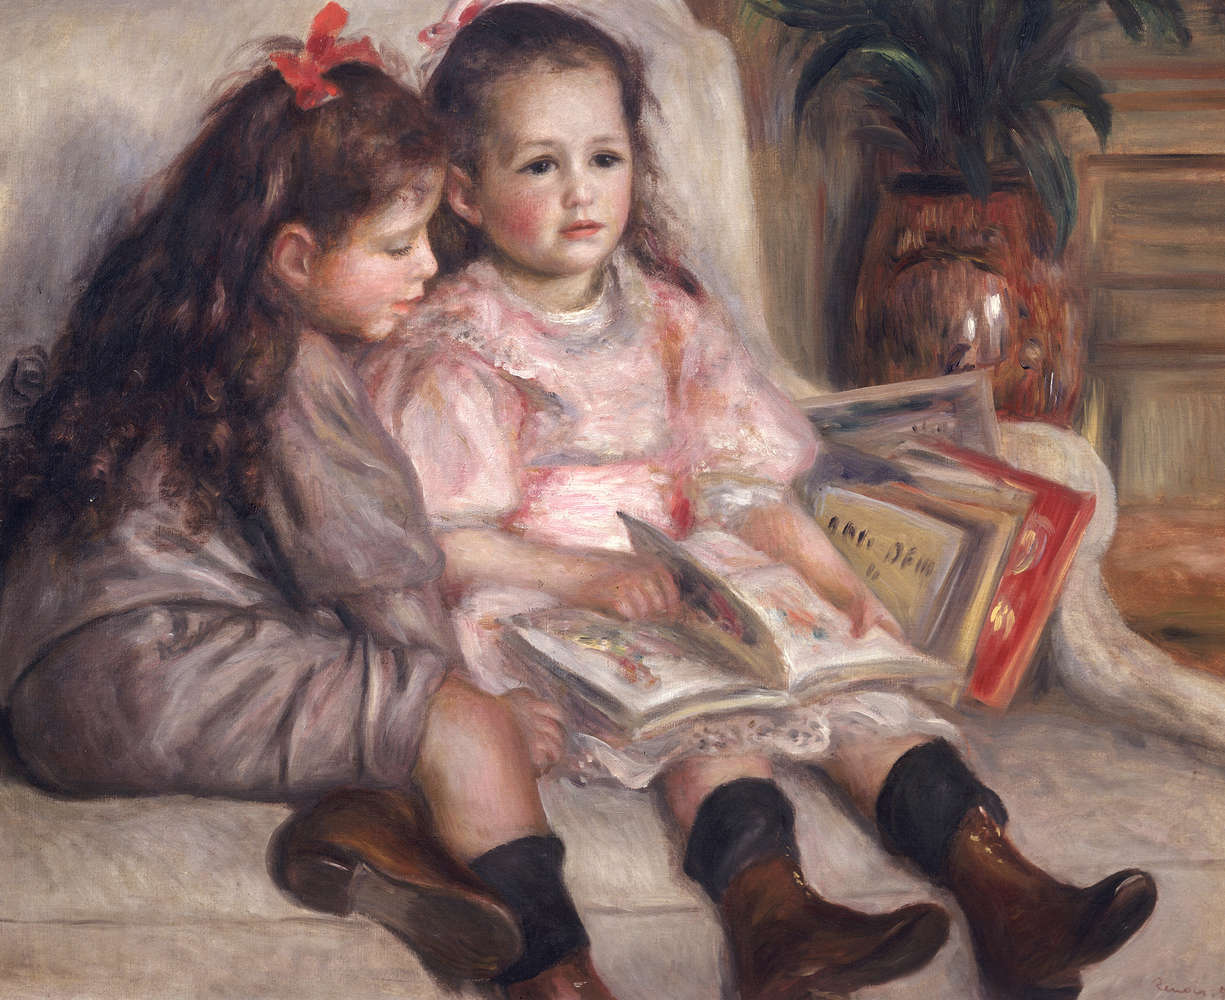             Fotomurali "Ritratti di bambini" di Pierre Auguste Renoir
        